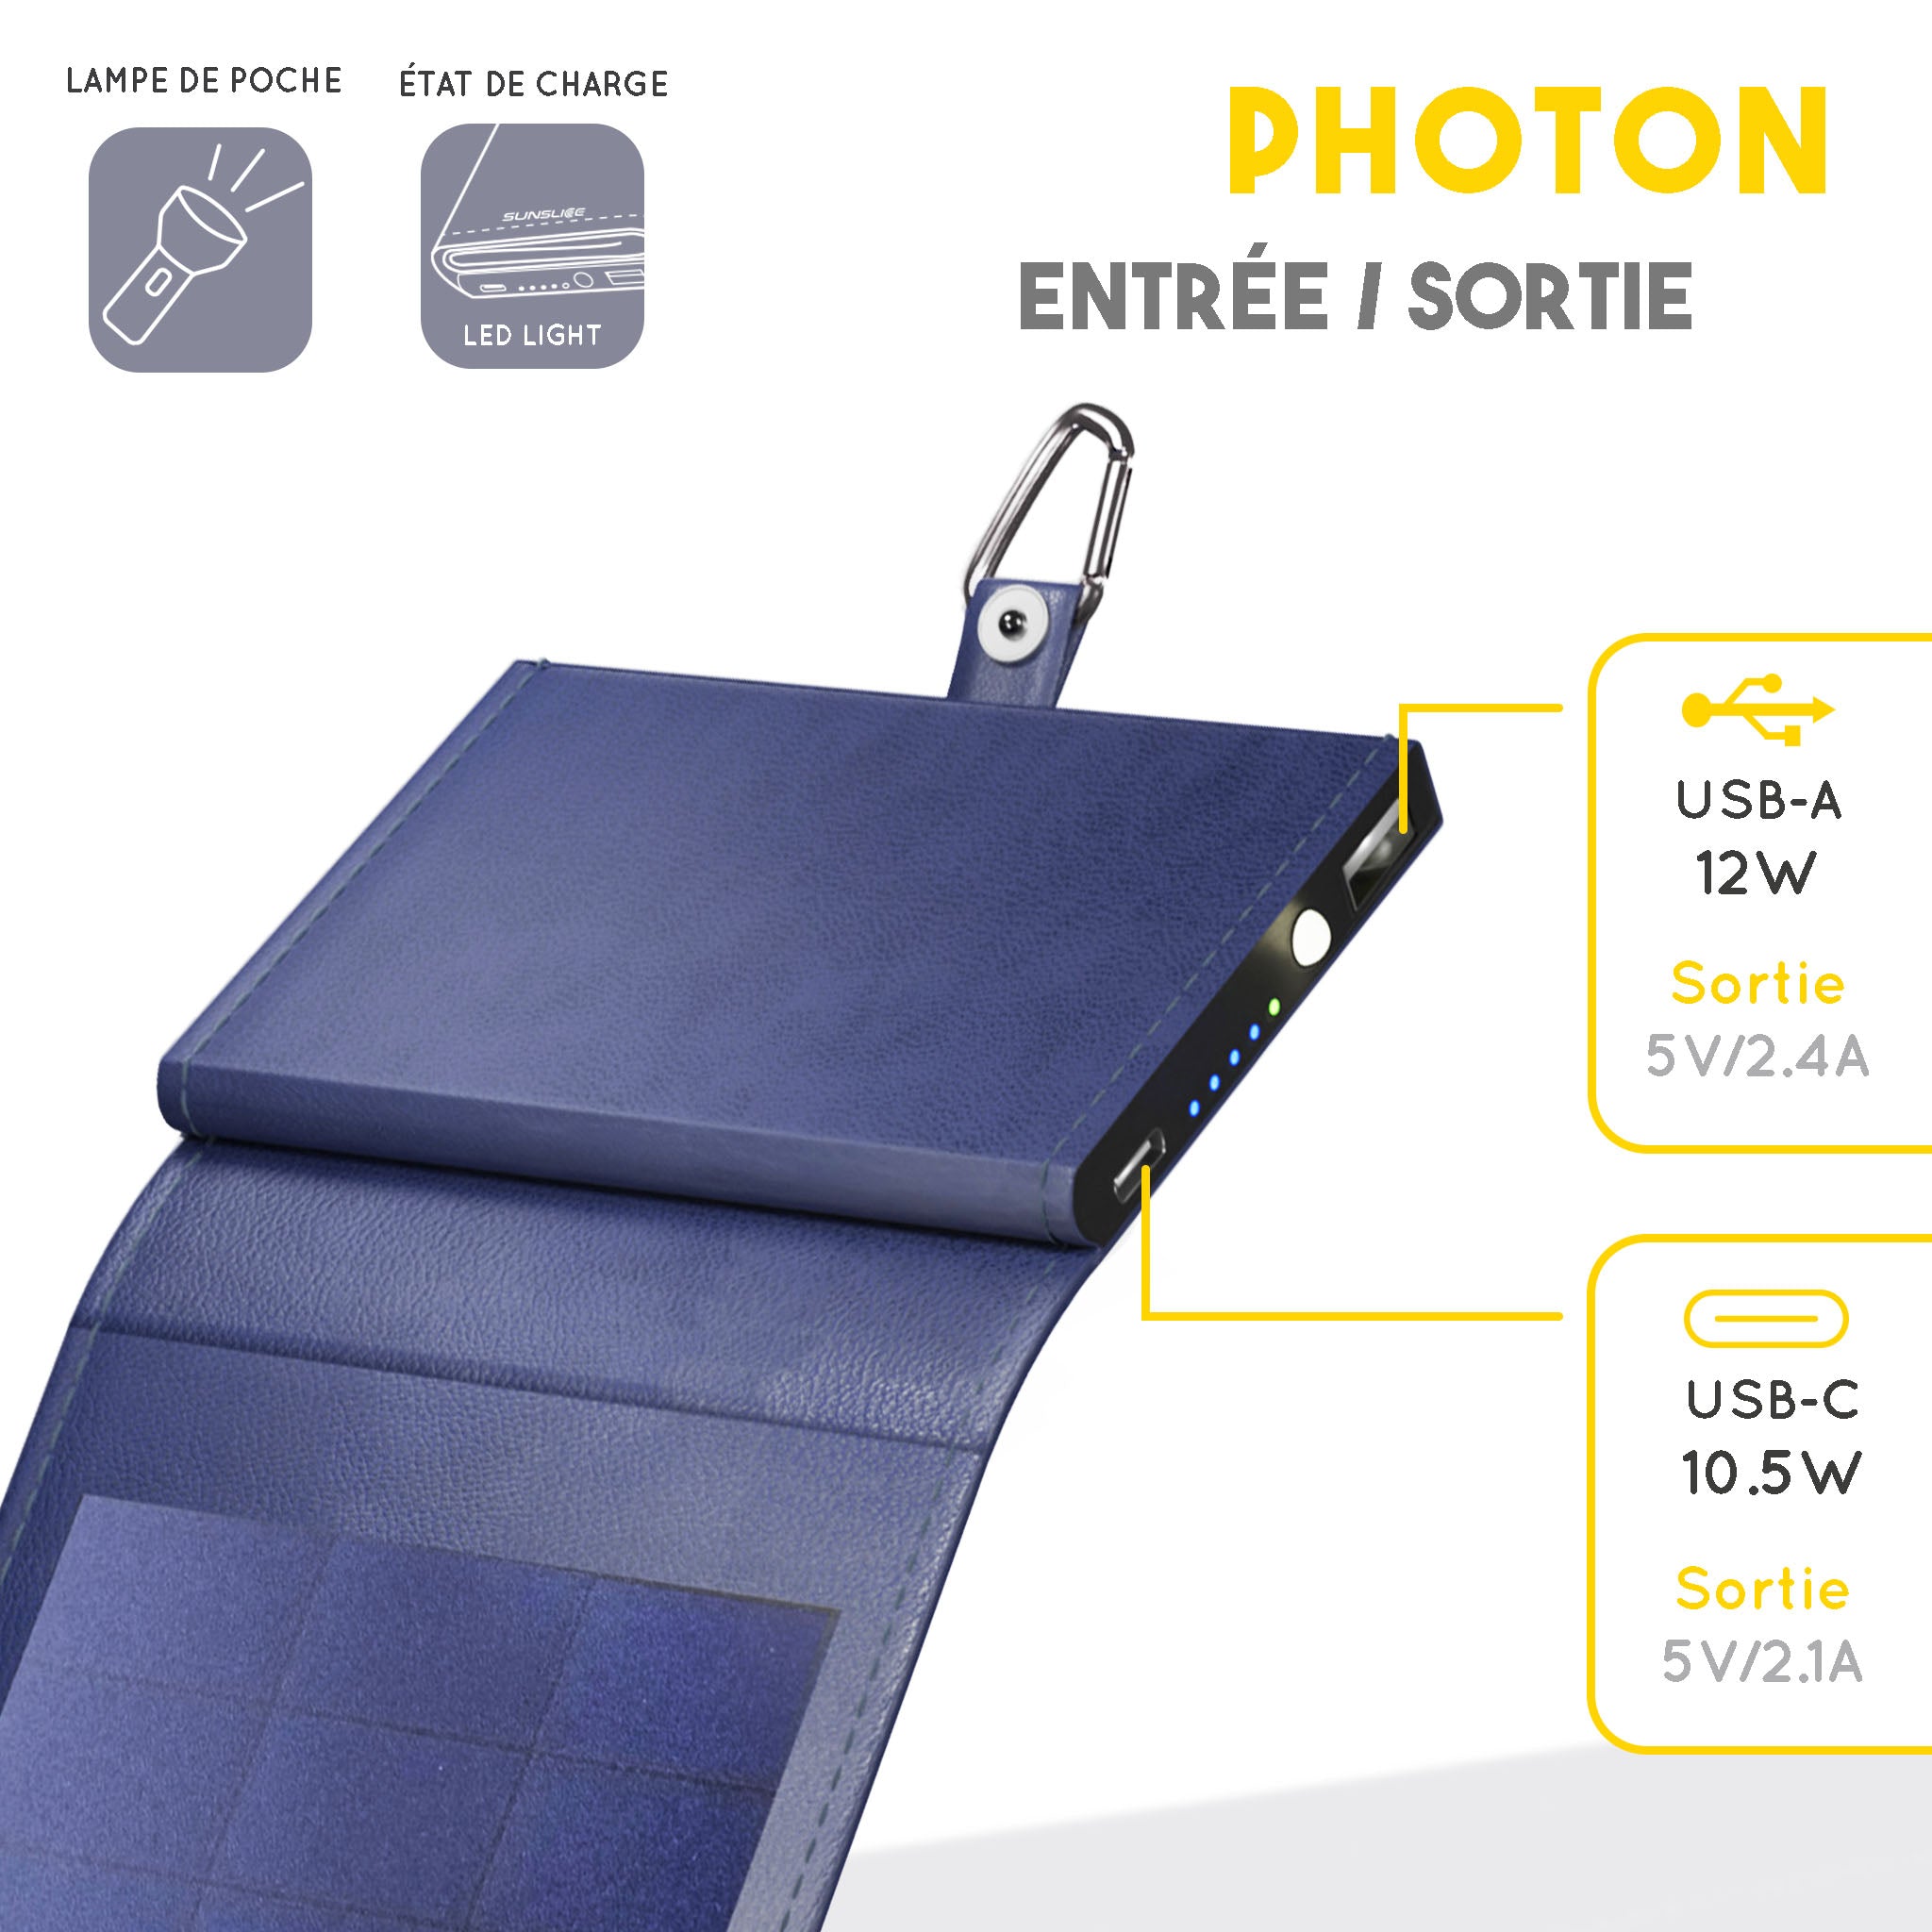 spécifications techniques du Photon le meilleur chargeur solaire de téléphone. sortie : USB-A 12W, USB-C 10.5W